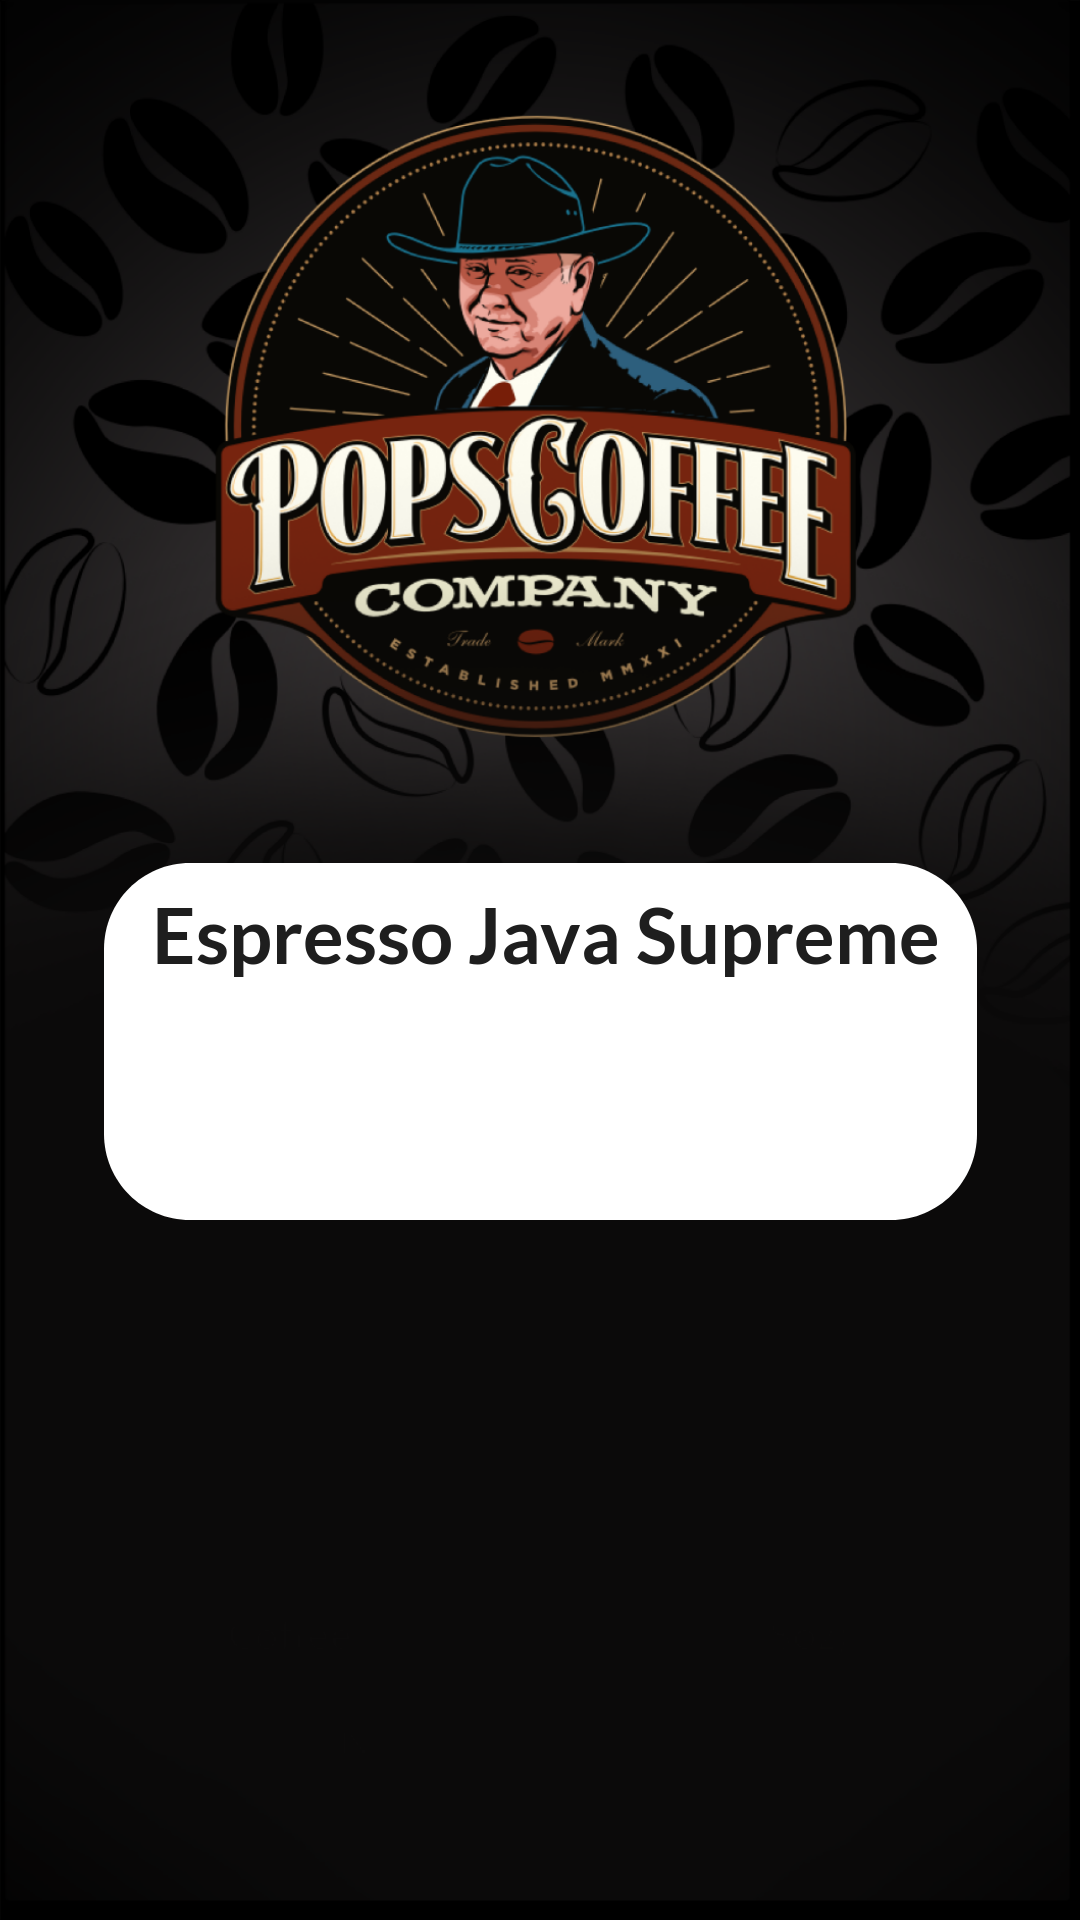 Espresso Java Supreme